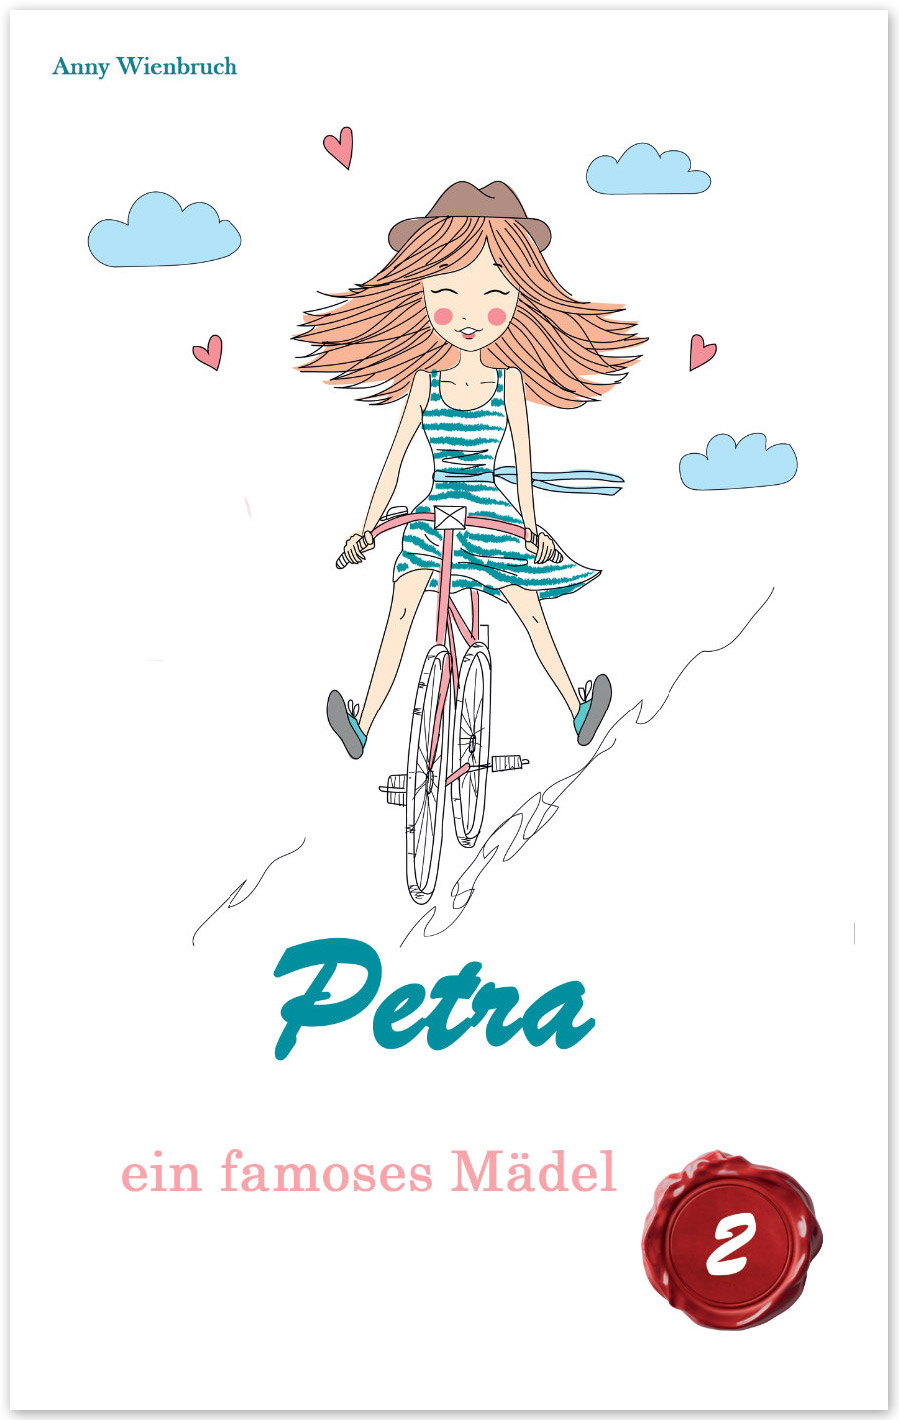 Petra - ein famoses Mädchen